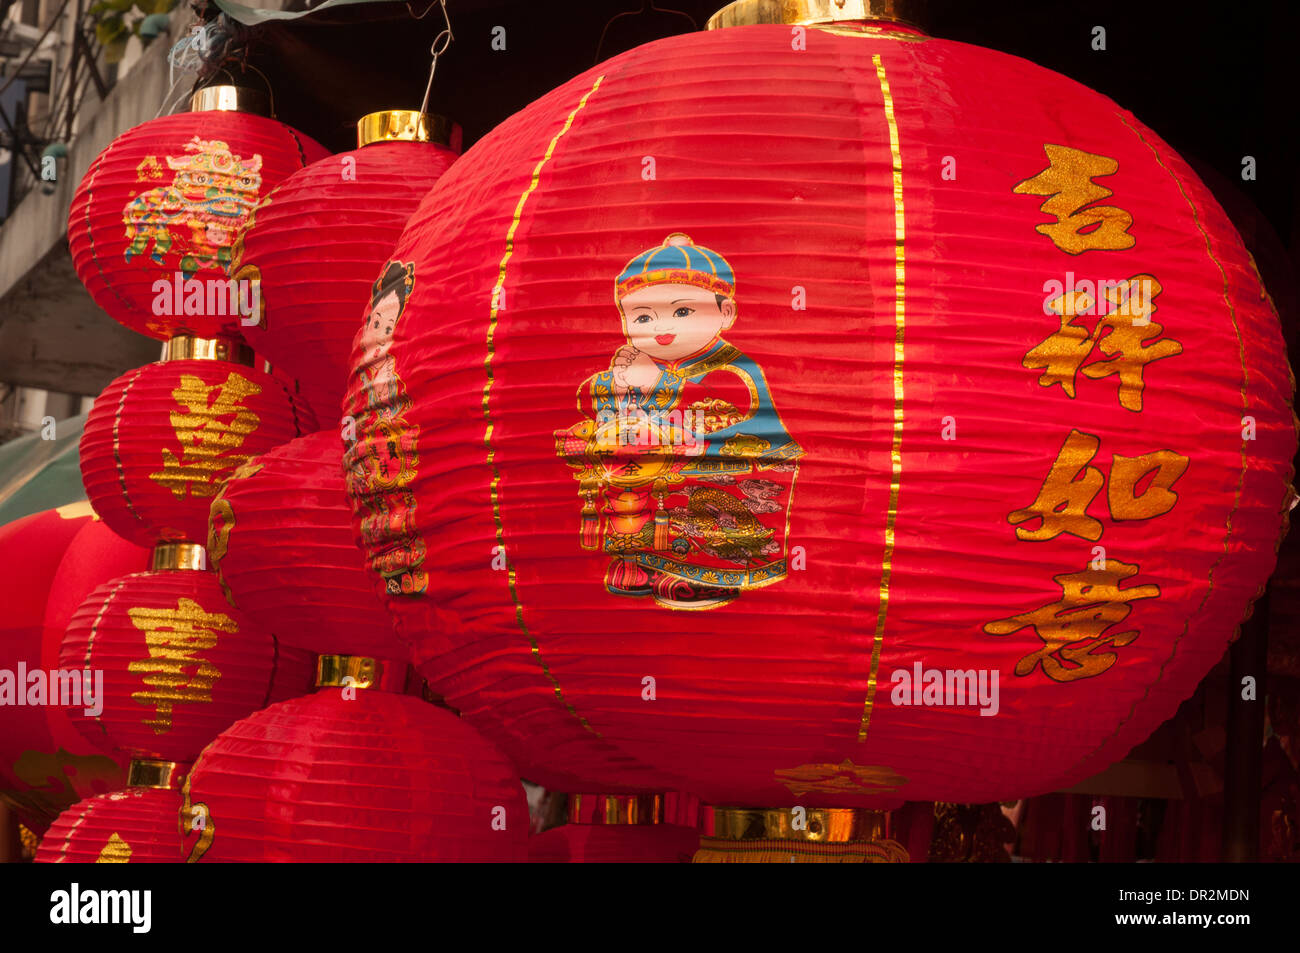 Lanternes de fête sur l'affichage comme Chinatown Bangkok se prépare pour le Nouvel An Chinois, 2014, l'année du cheval Banque D'Images